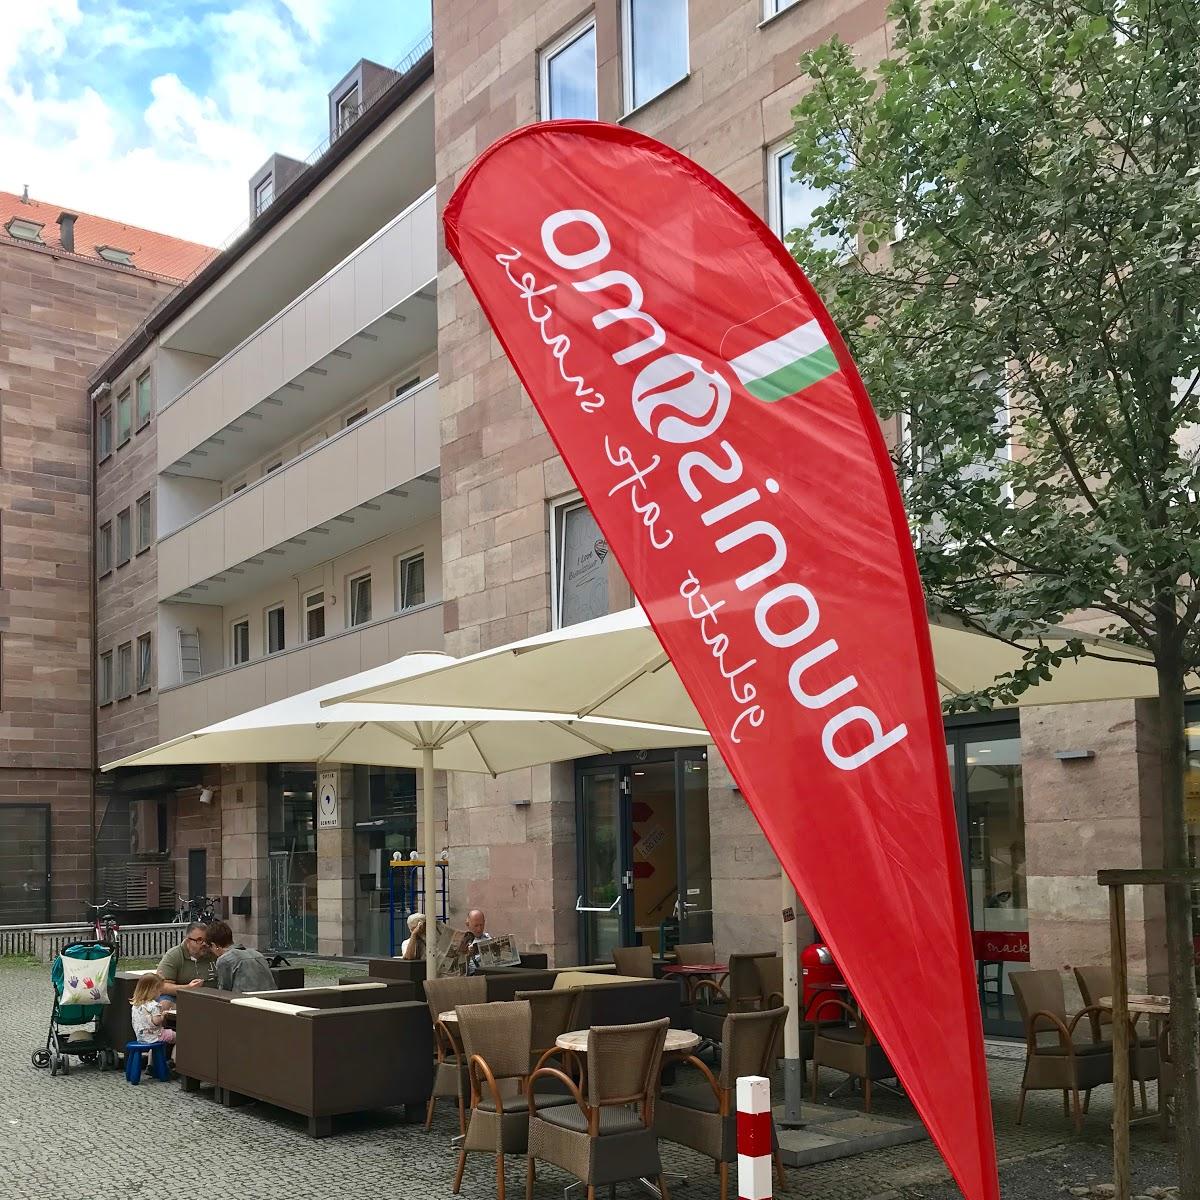 Restaurant "Buonissimo  | Italienische Eis-Manufaktur" in Nürnberg